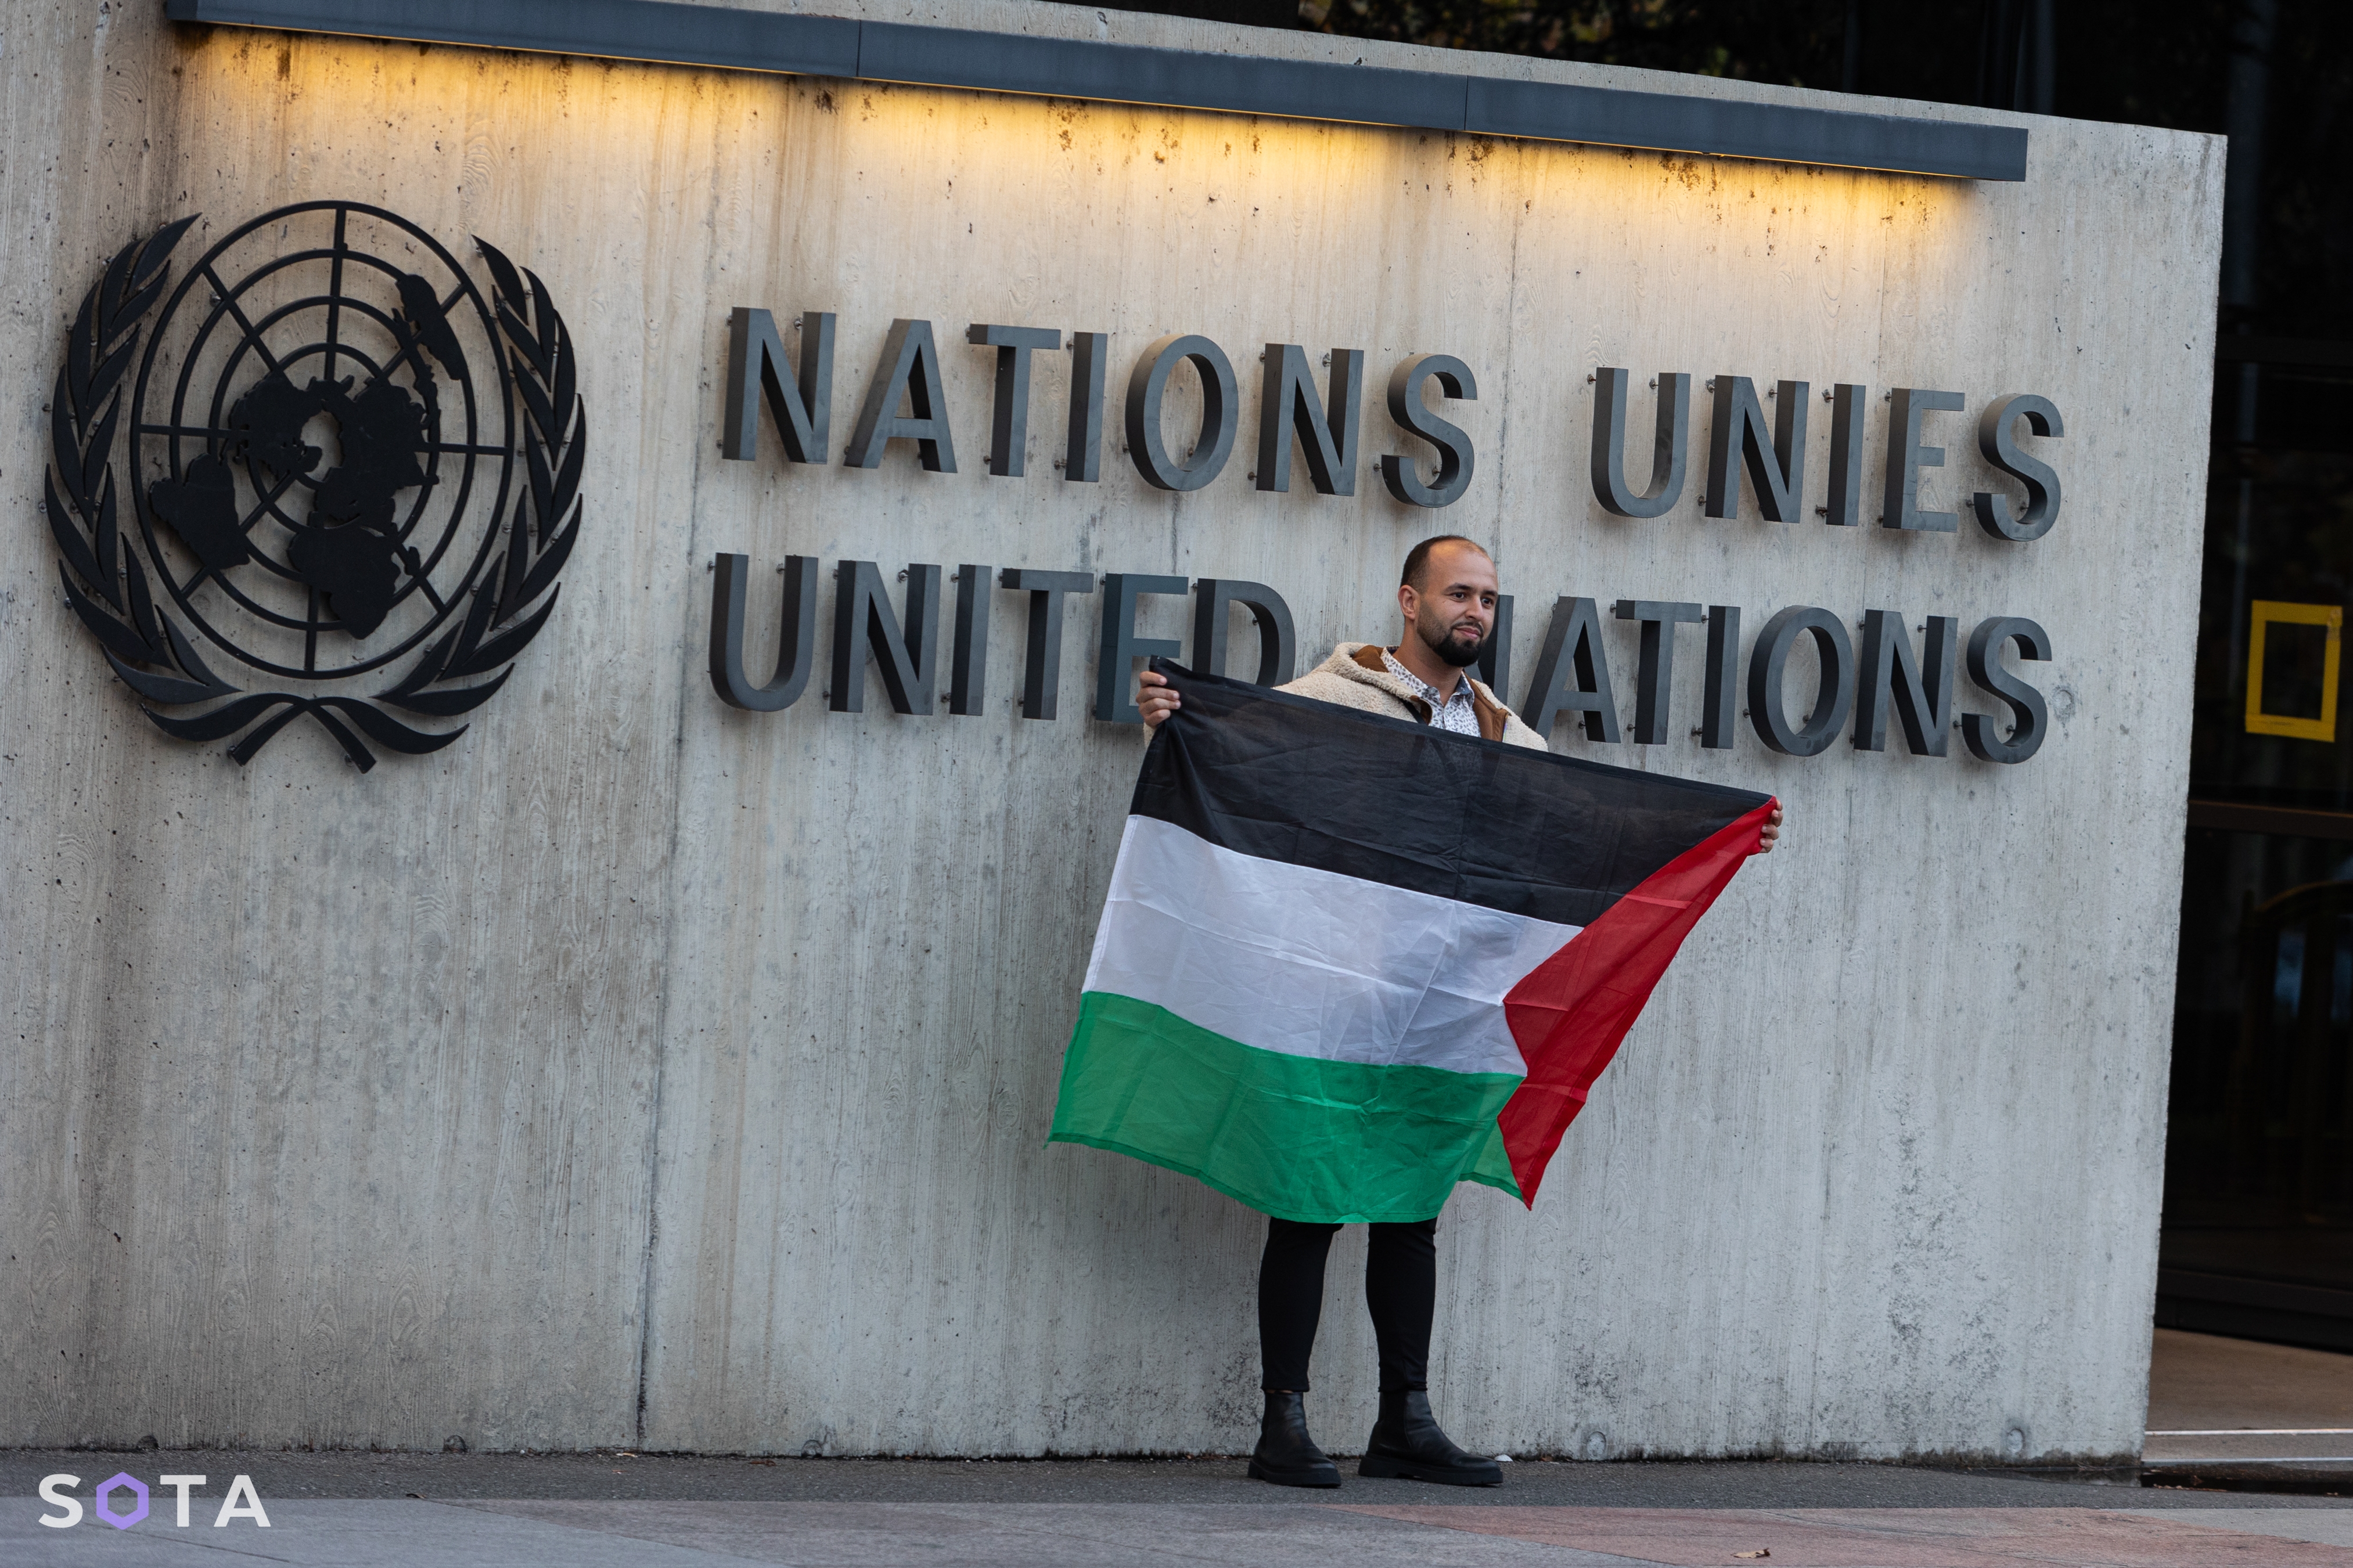 Пикет в поддержку Палестины после теракта 7 октября. Дворец ООН в Женеве
Руслан Терехов / SOTA